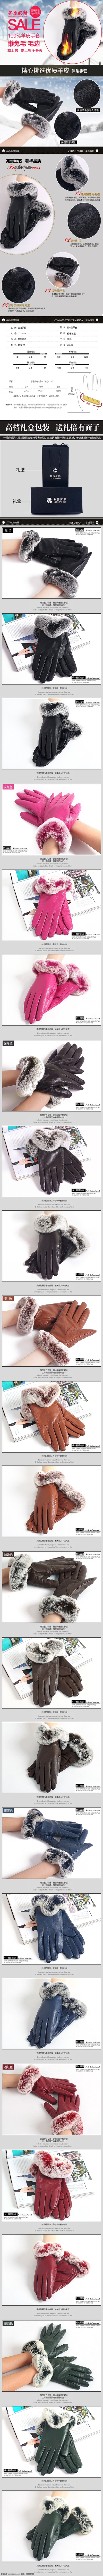 冬季 羊毛 保暖 手套 冬季保暖手套 羊毛手套 懒兔毛手套 白色